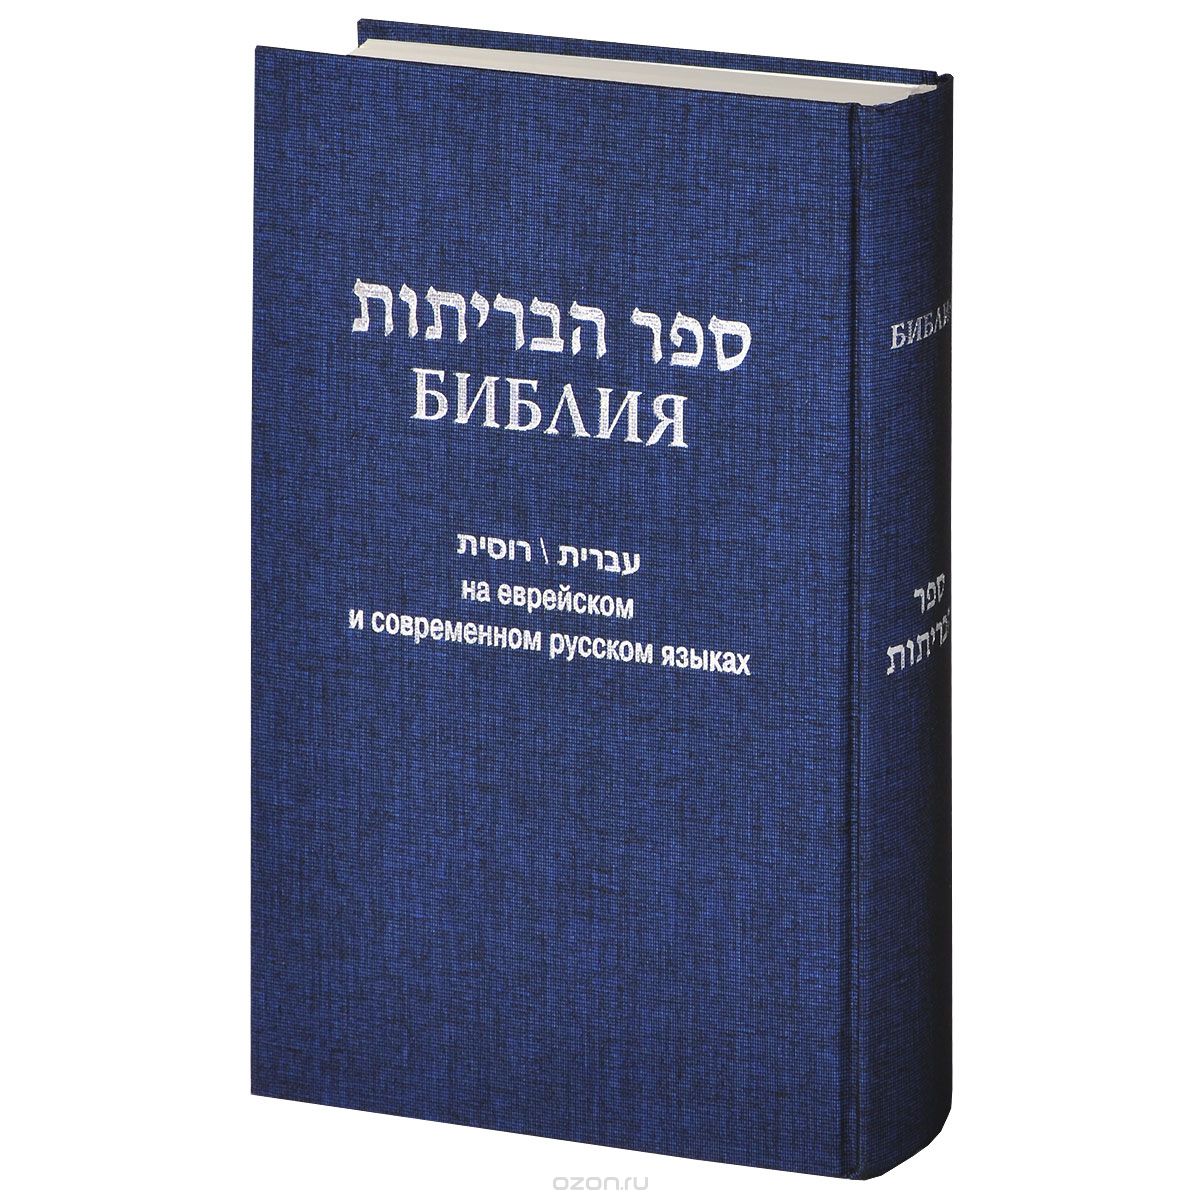 Скачать книгу "Библия. На еврейском и современном русском языках"